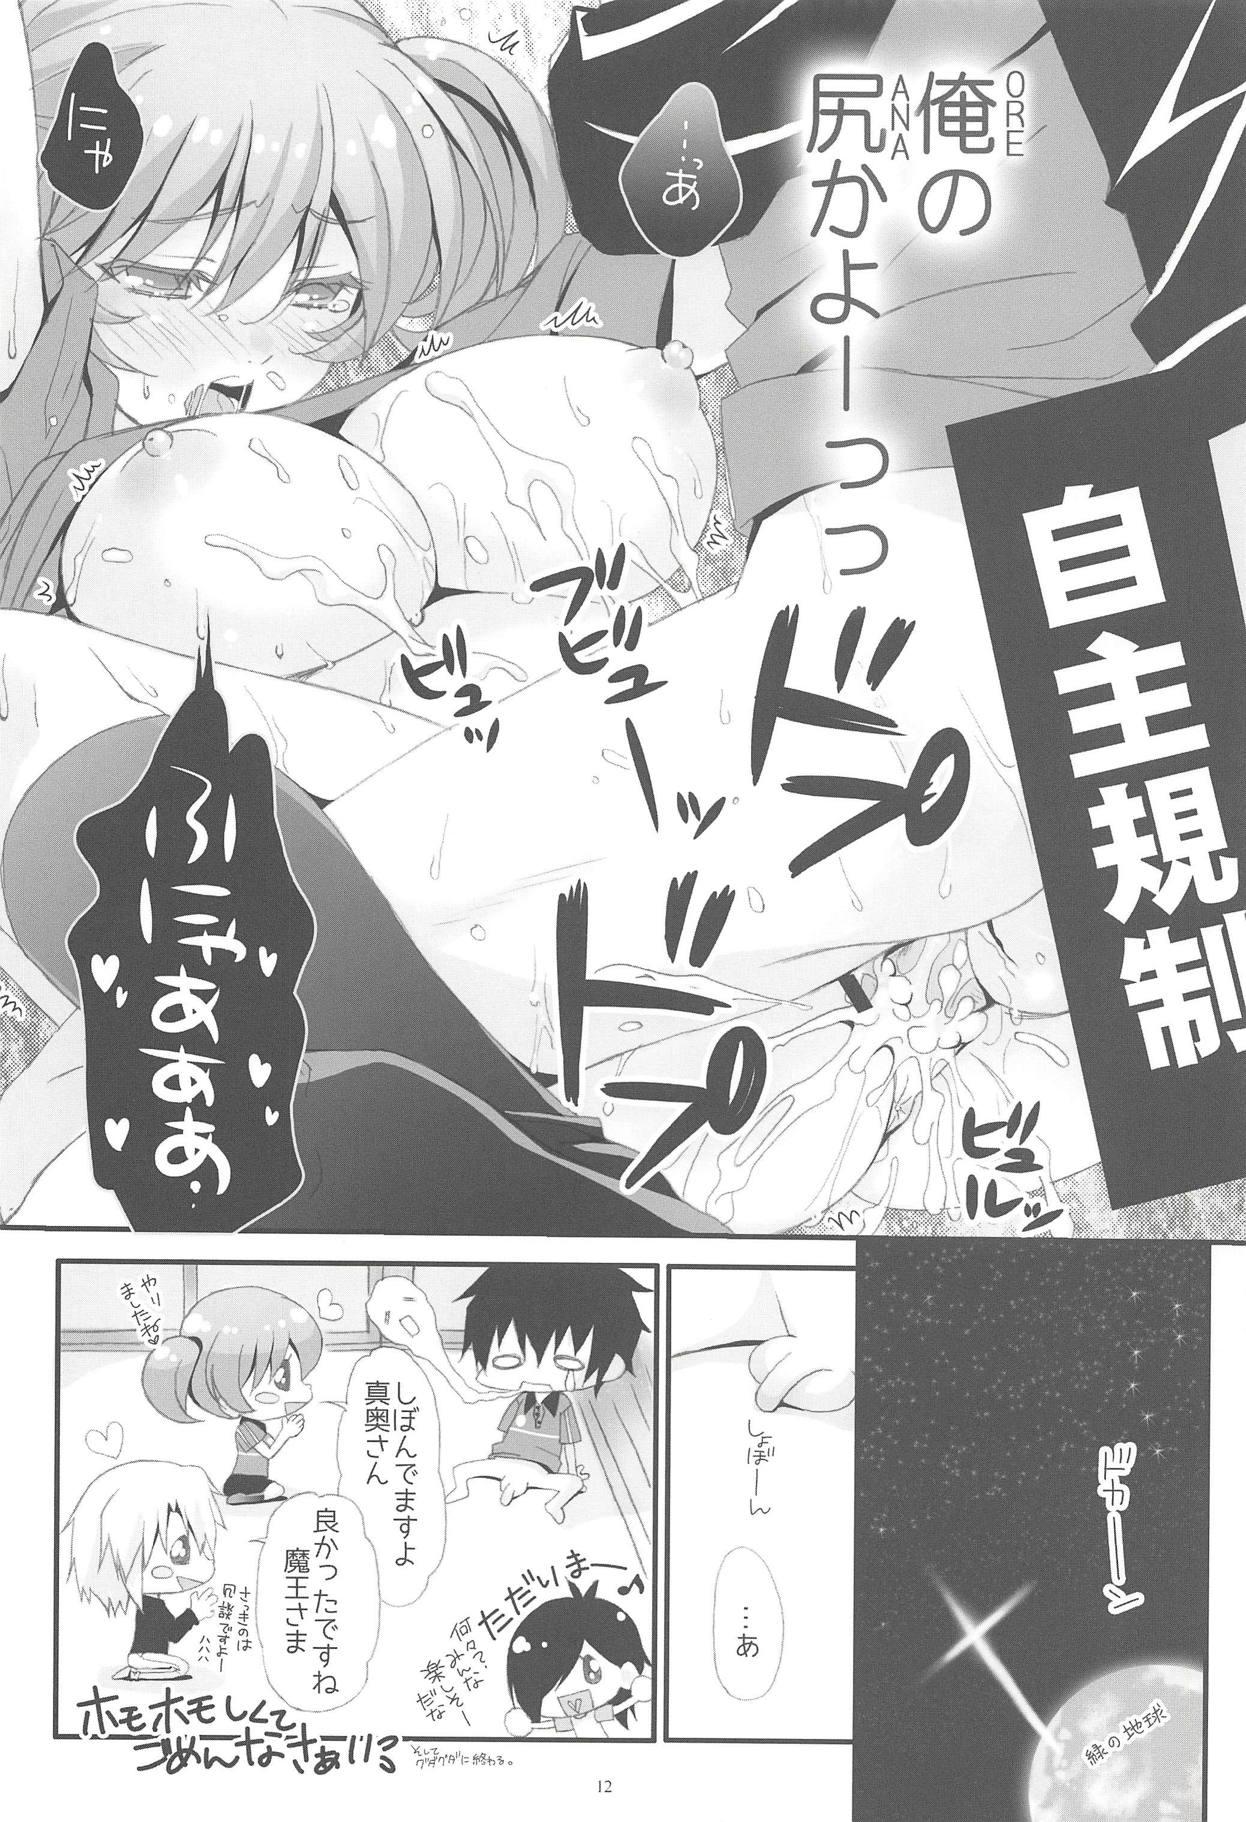 Camgirl Chii-chan Backspin - Hataraku maou sama Vagina - Page 11